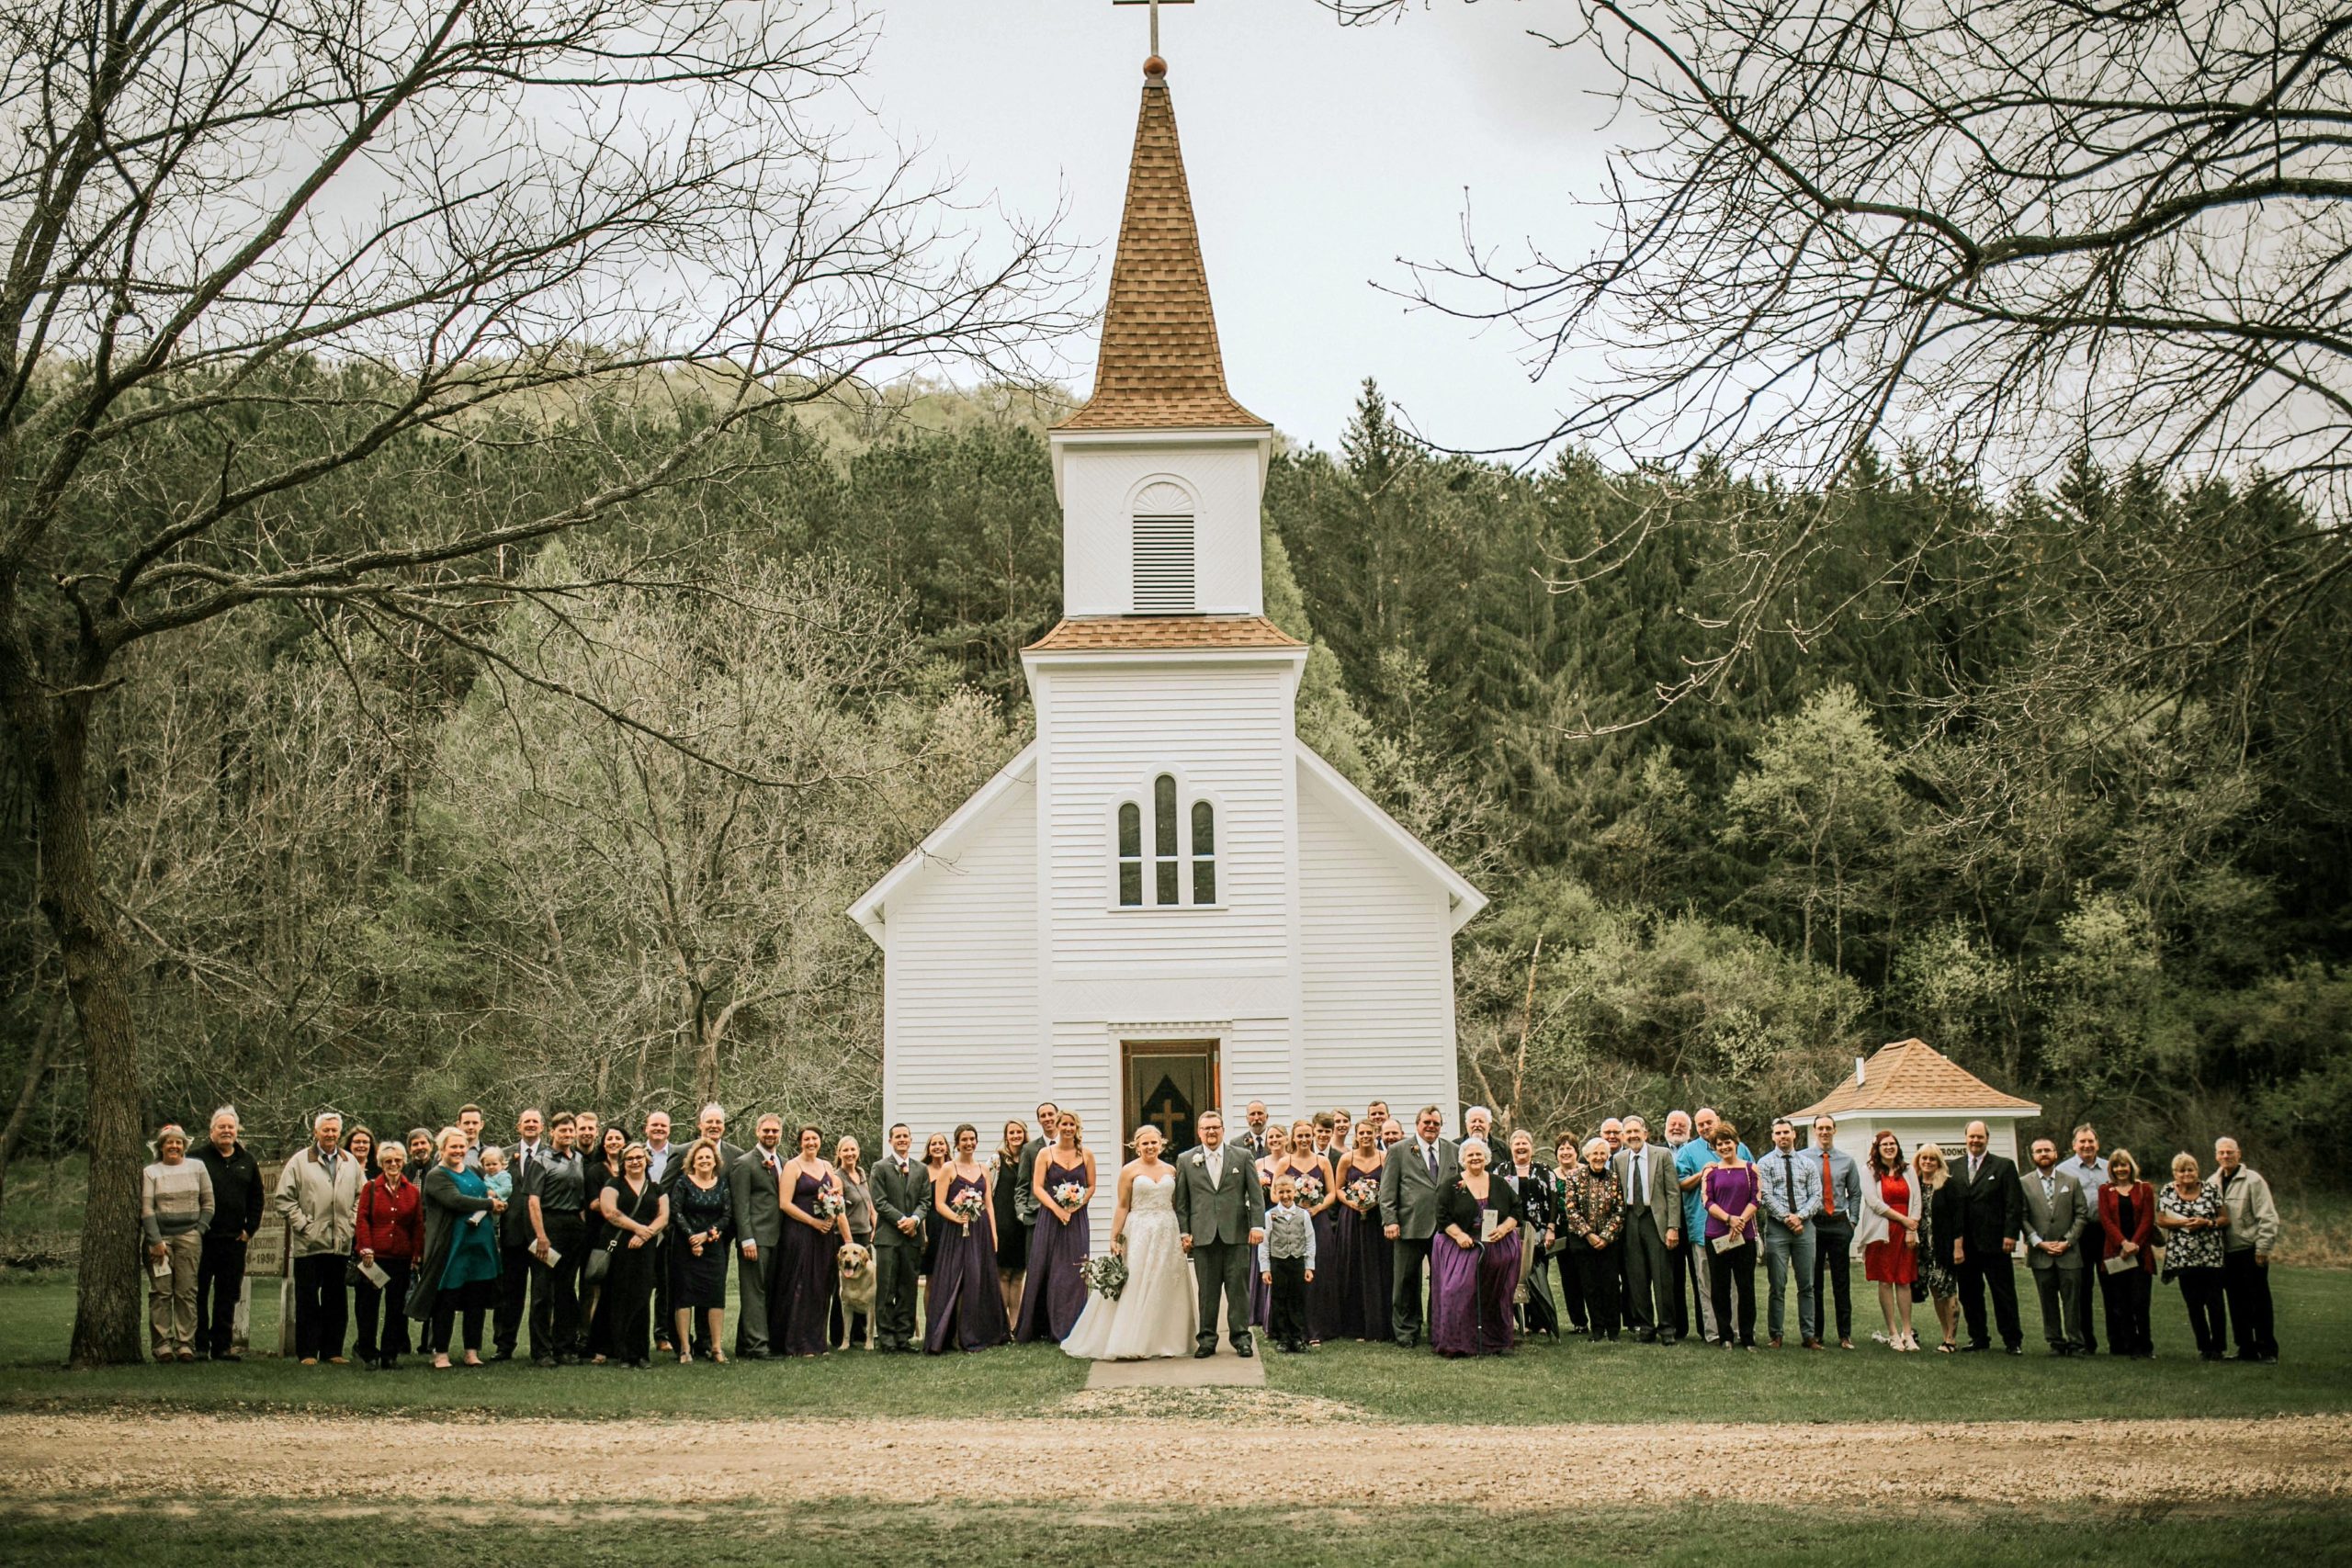 Top 10 Rustic Wedding Venues in Wisconsin